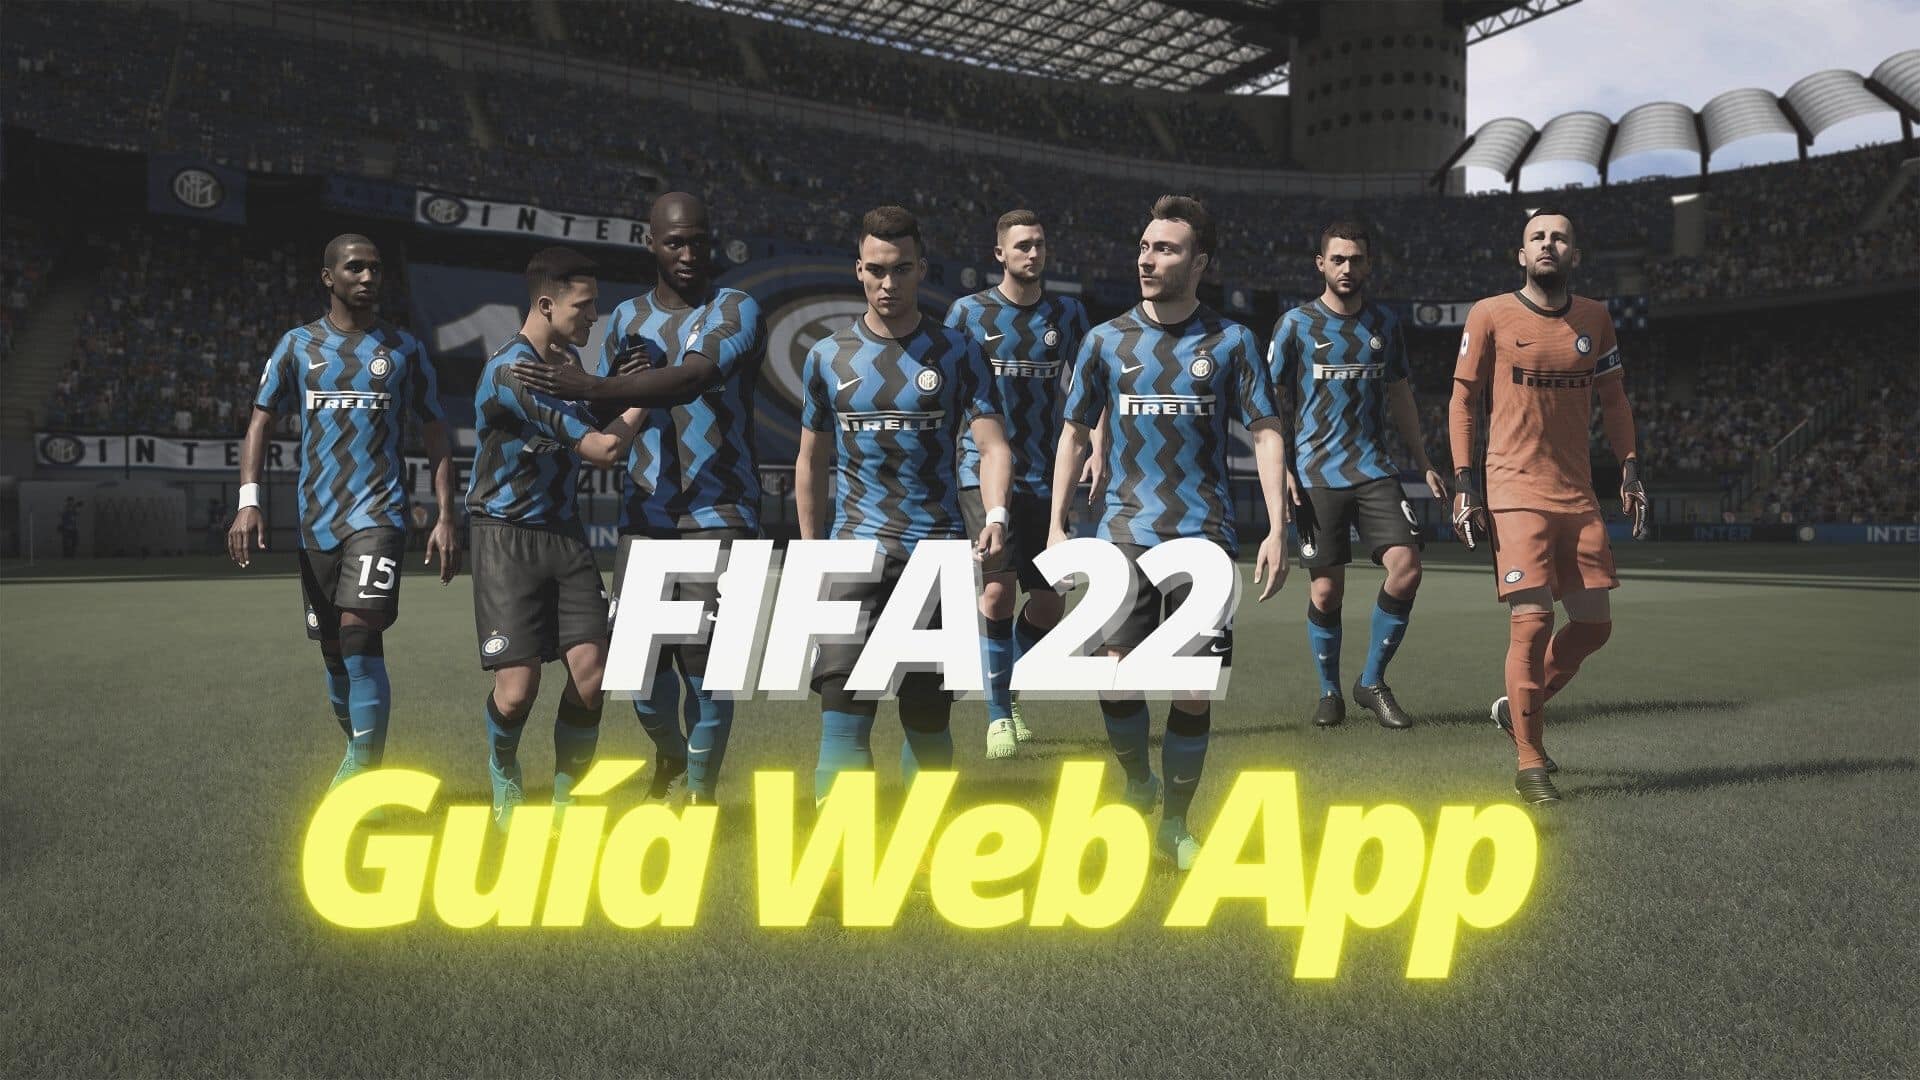 Fifa 23 ya está disponible: cómo acceder a la Web App y la Companion App